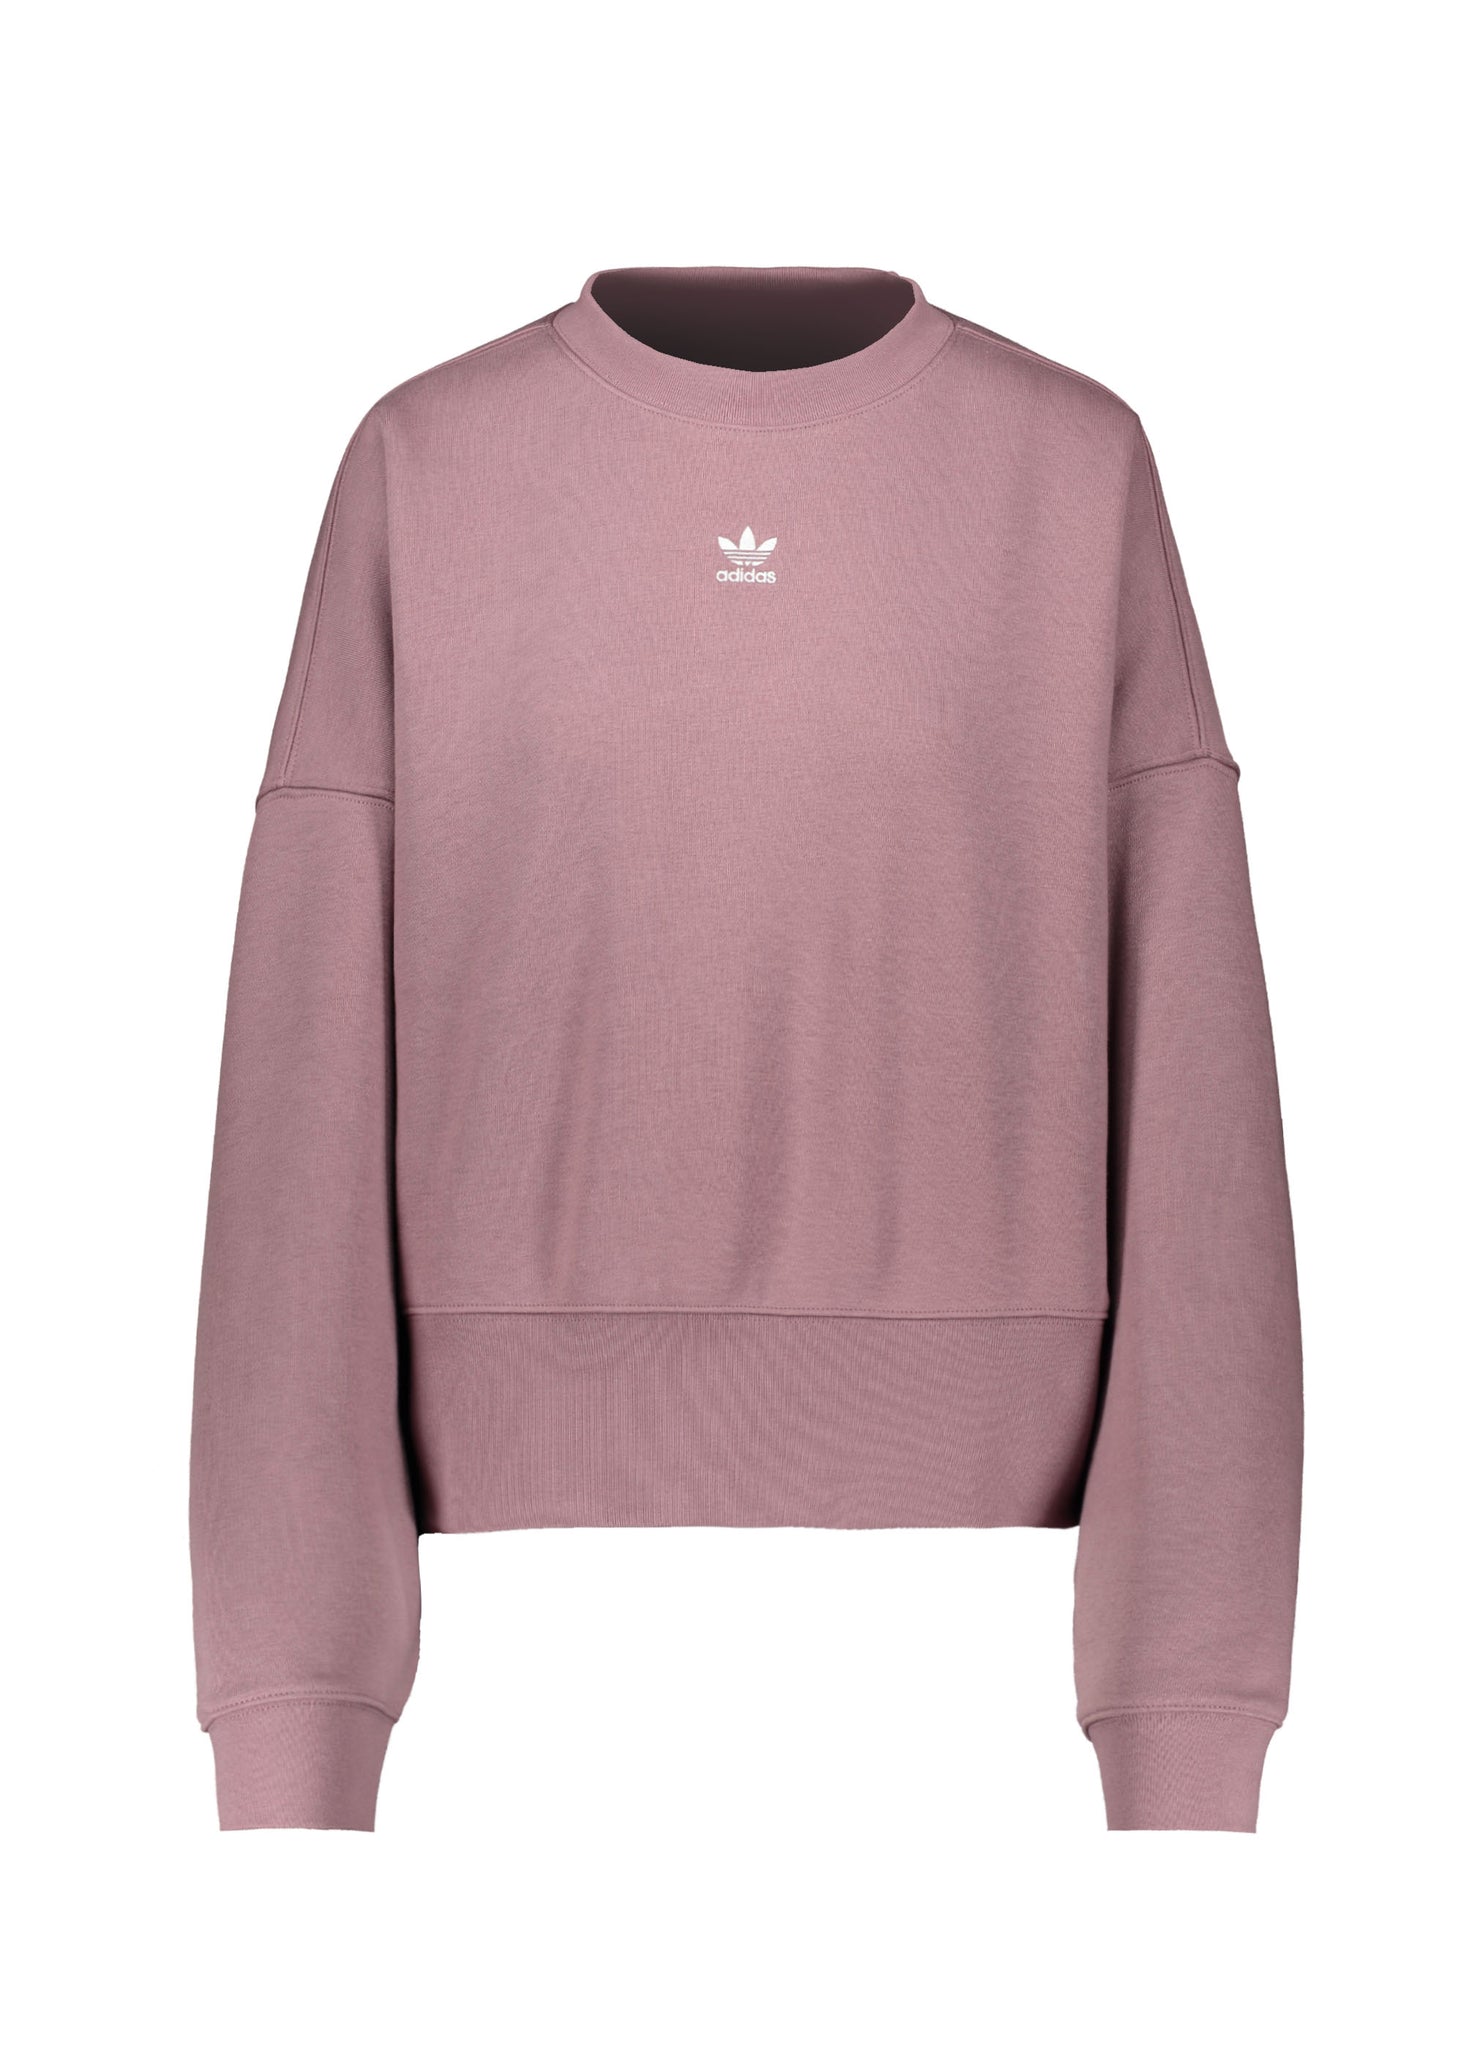 Adidas sweatshirt - Wonaxi